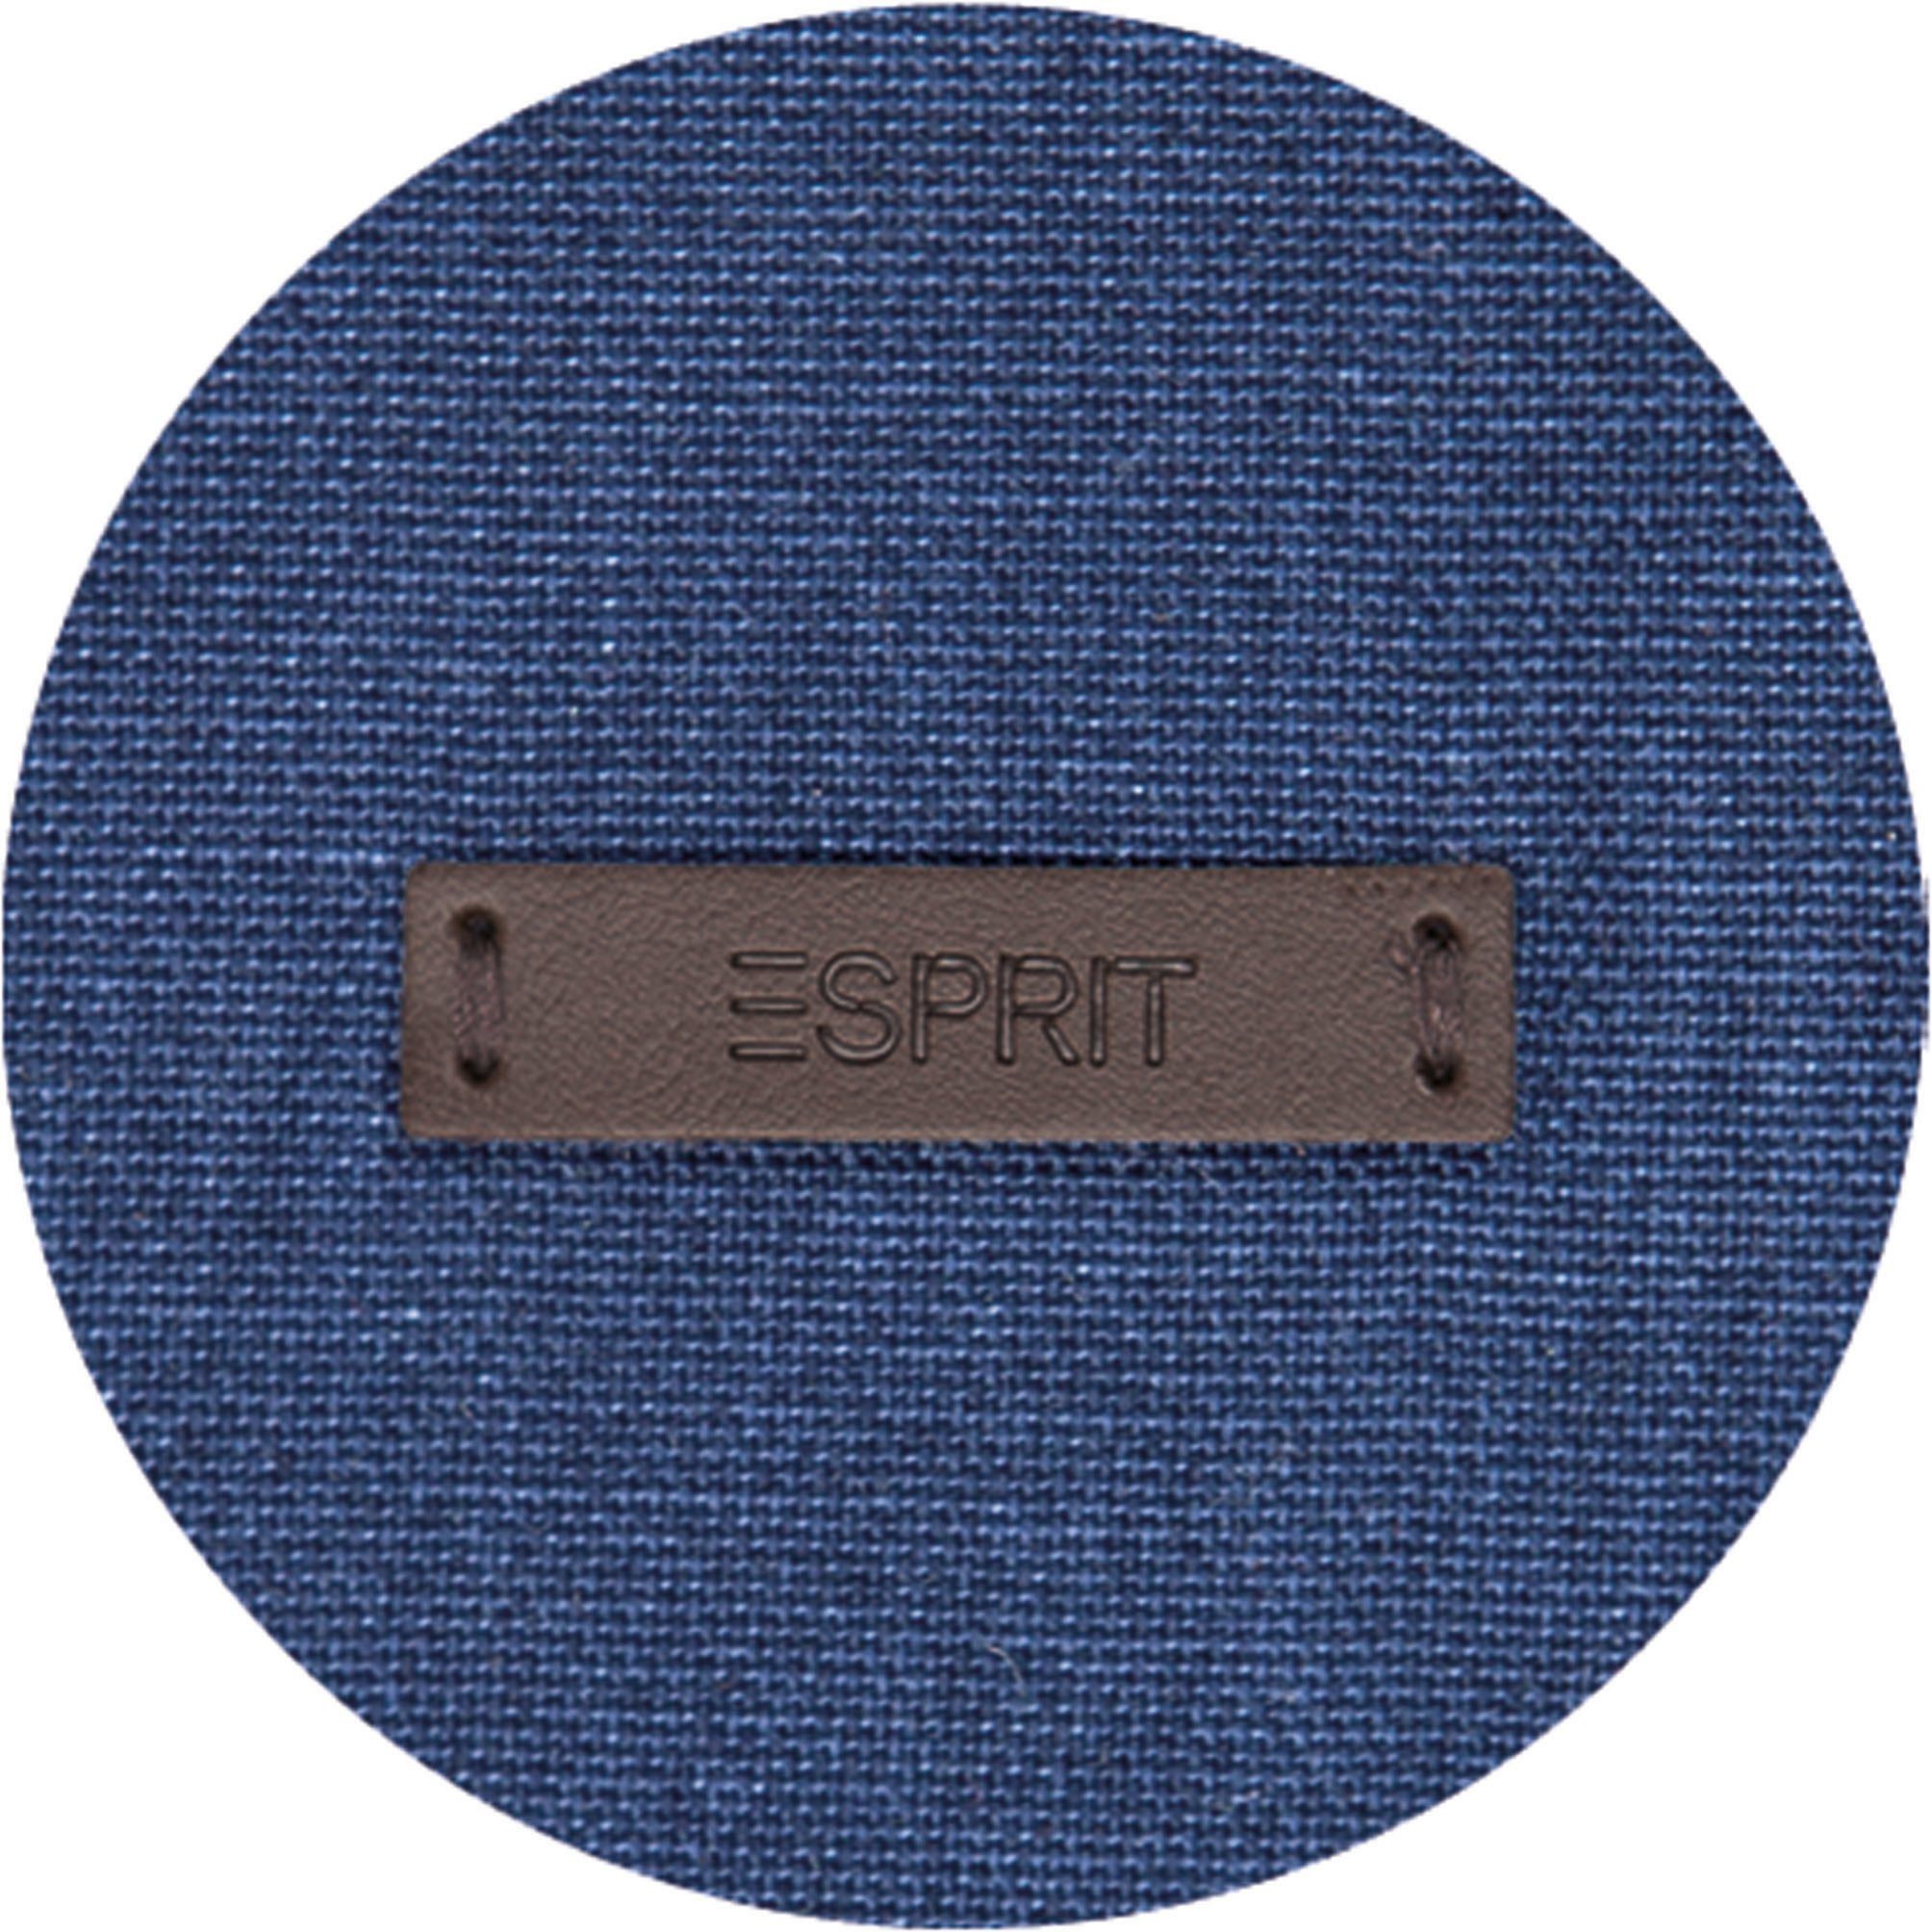 dunkelblau/navy/marine (1 aus blickdicht nachhaltiger Schlaufen Baumwolle, Neo, blickdicht, Vorhang verdeckte St), Esprit,